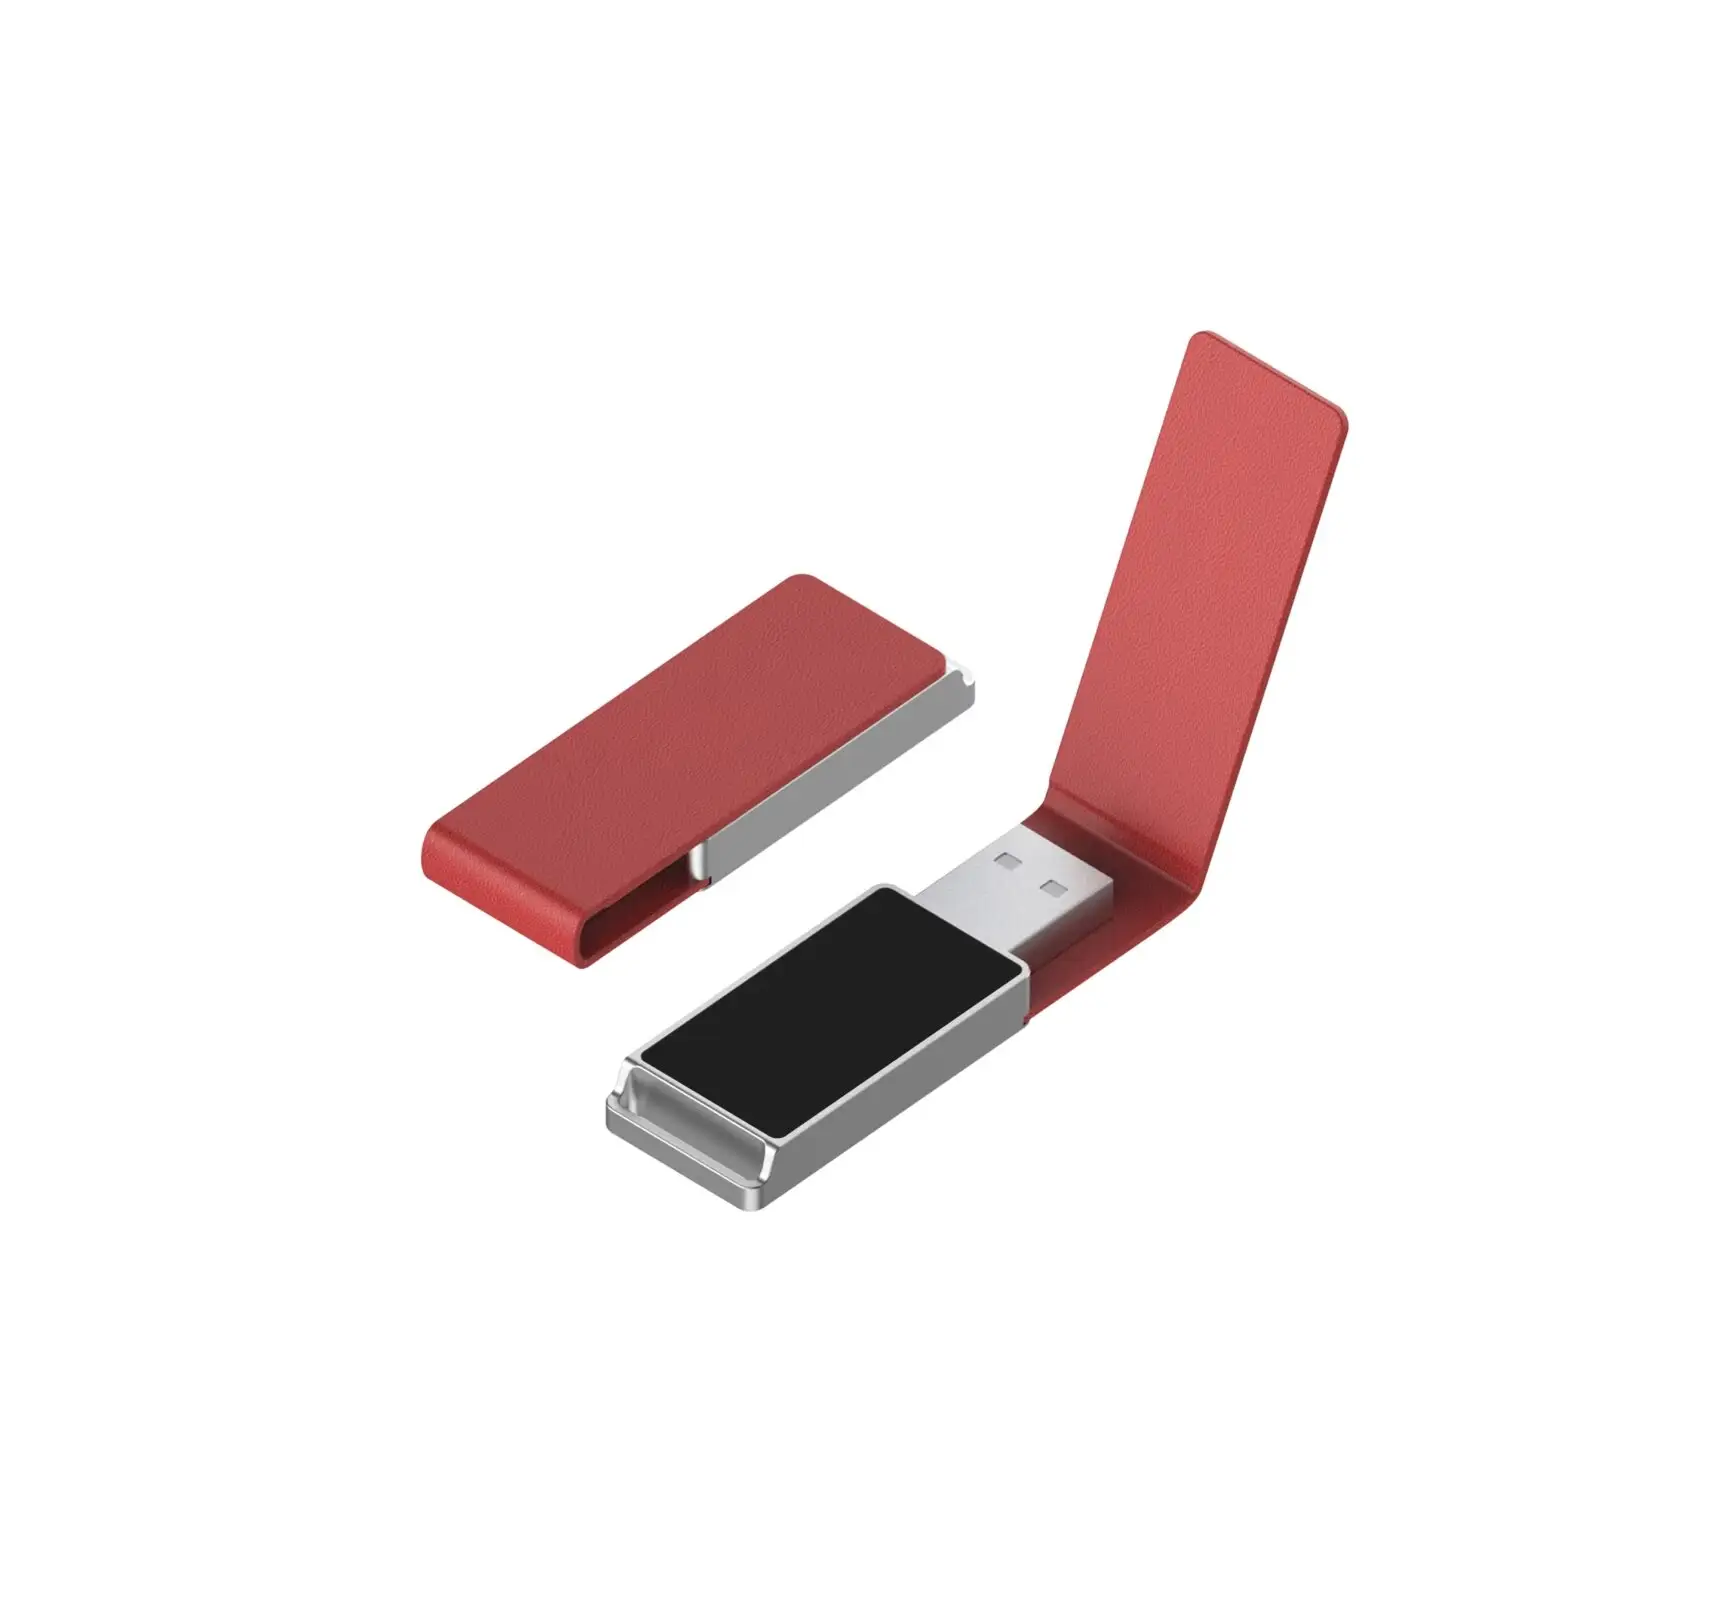 Commercio all'ingrosso della fabbrica Logo personalizzato 16GB in pelle luminoso USB braccialetto Flash Drive nuova interfaccia 2.0 regali promozionali